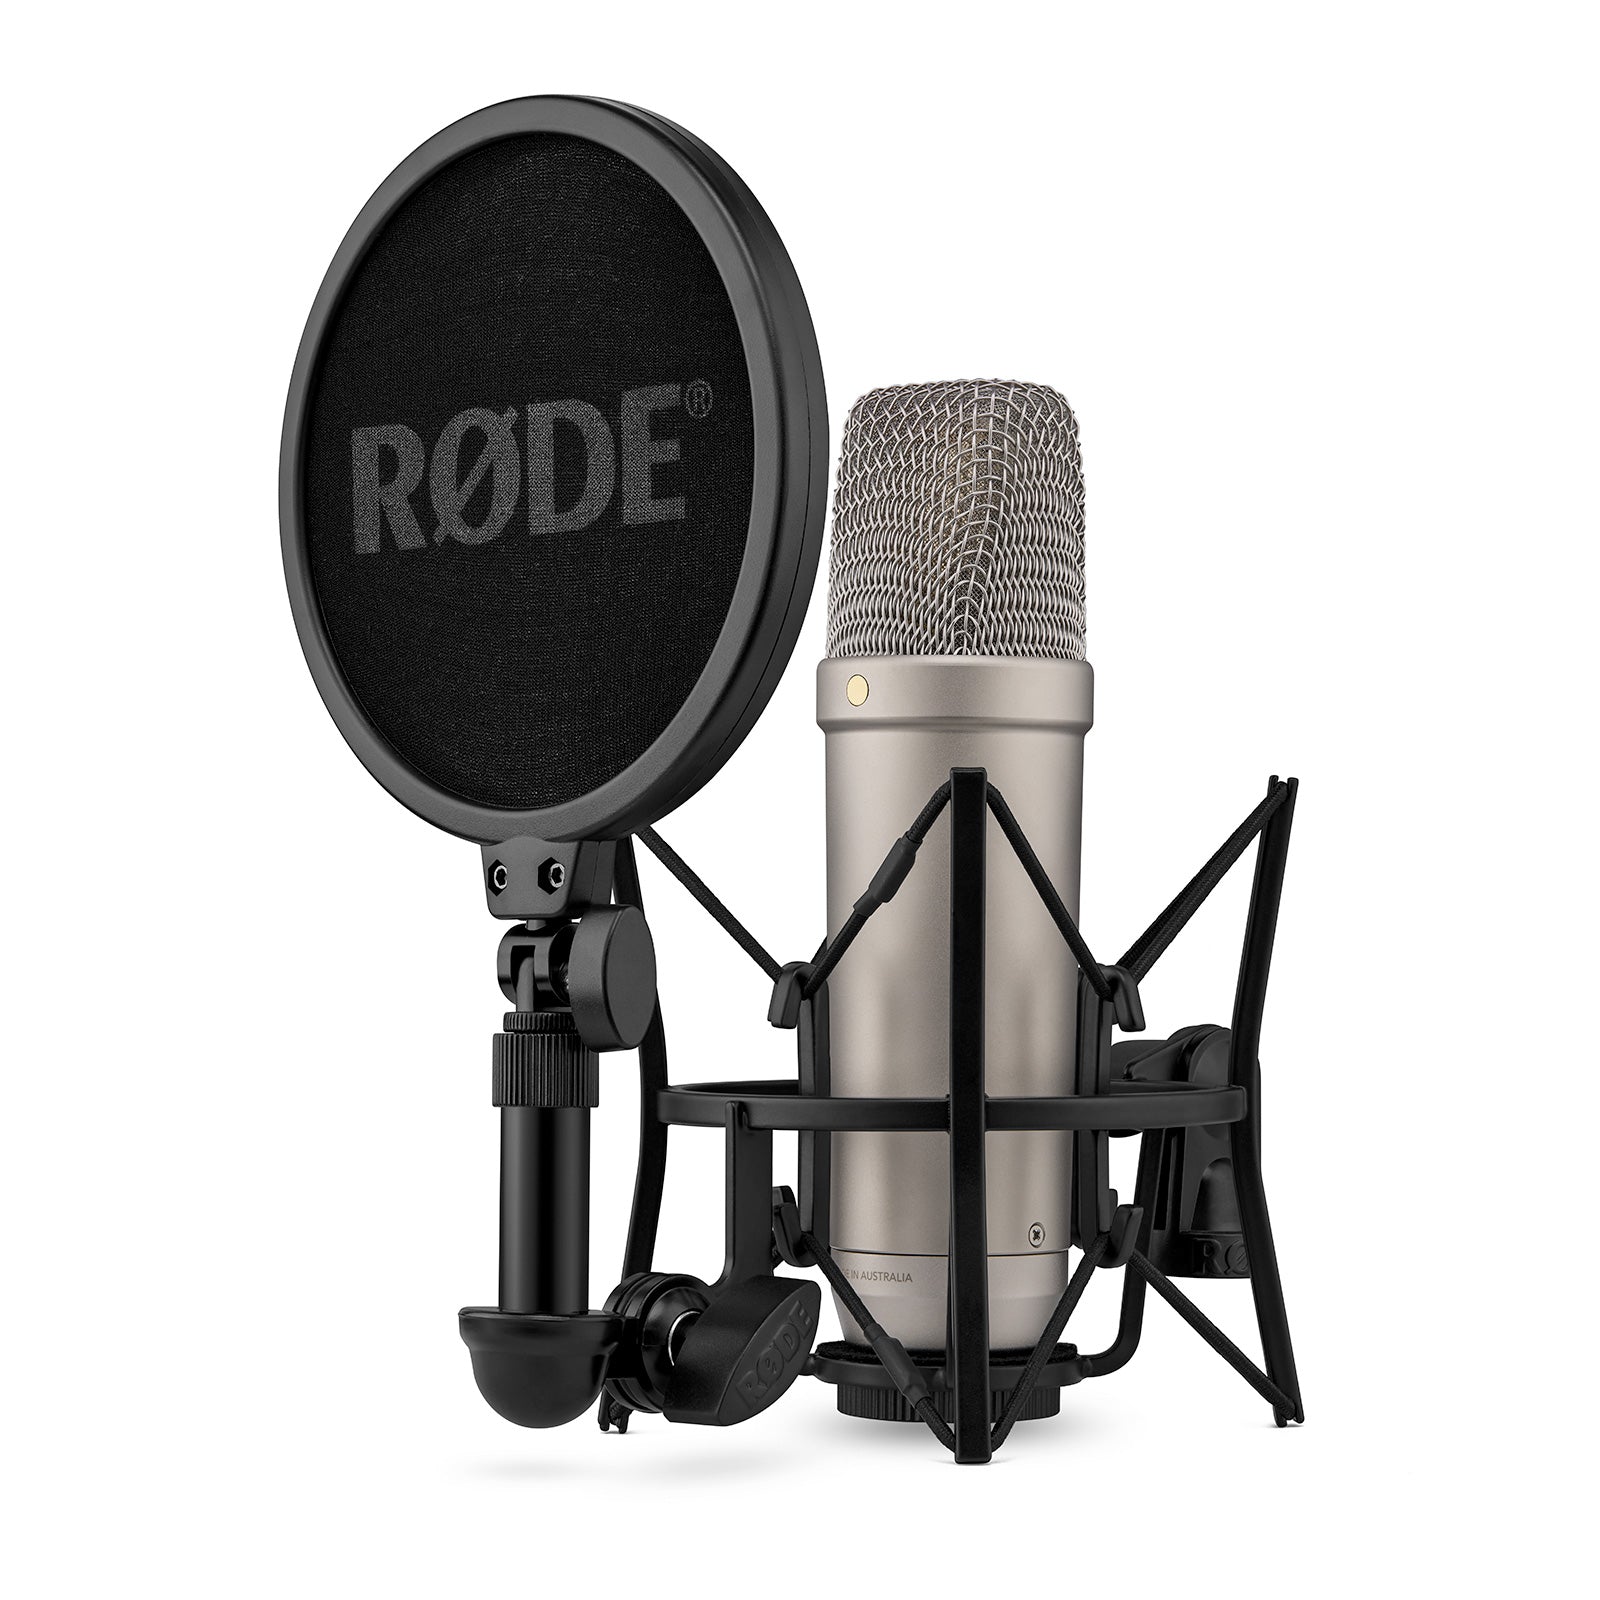 RODE(ロード) NT1 GEN 5 スタジオコンデンサーマイクロフォン シルバー